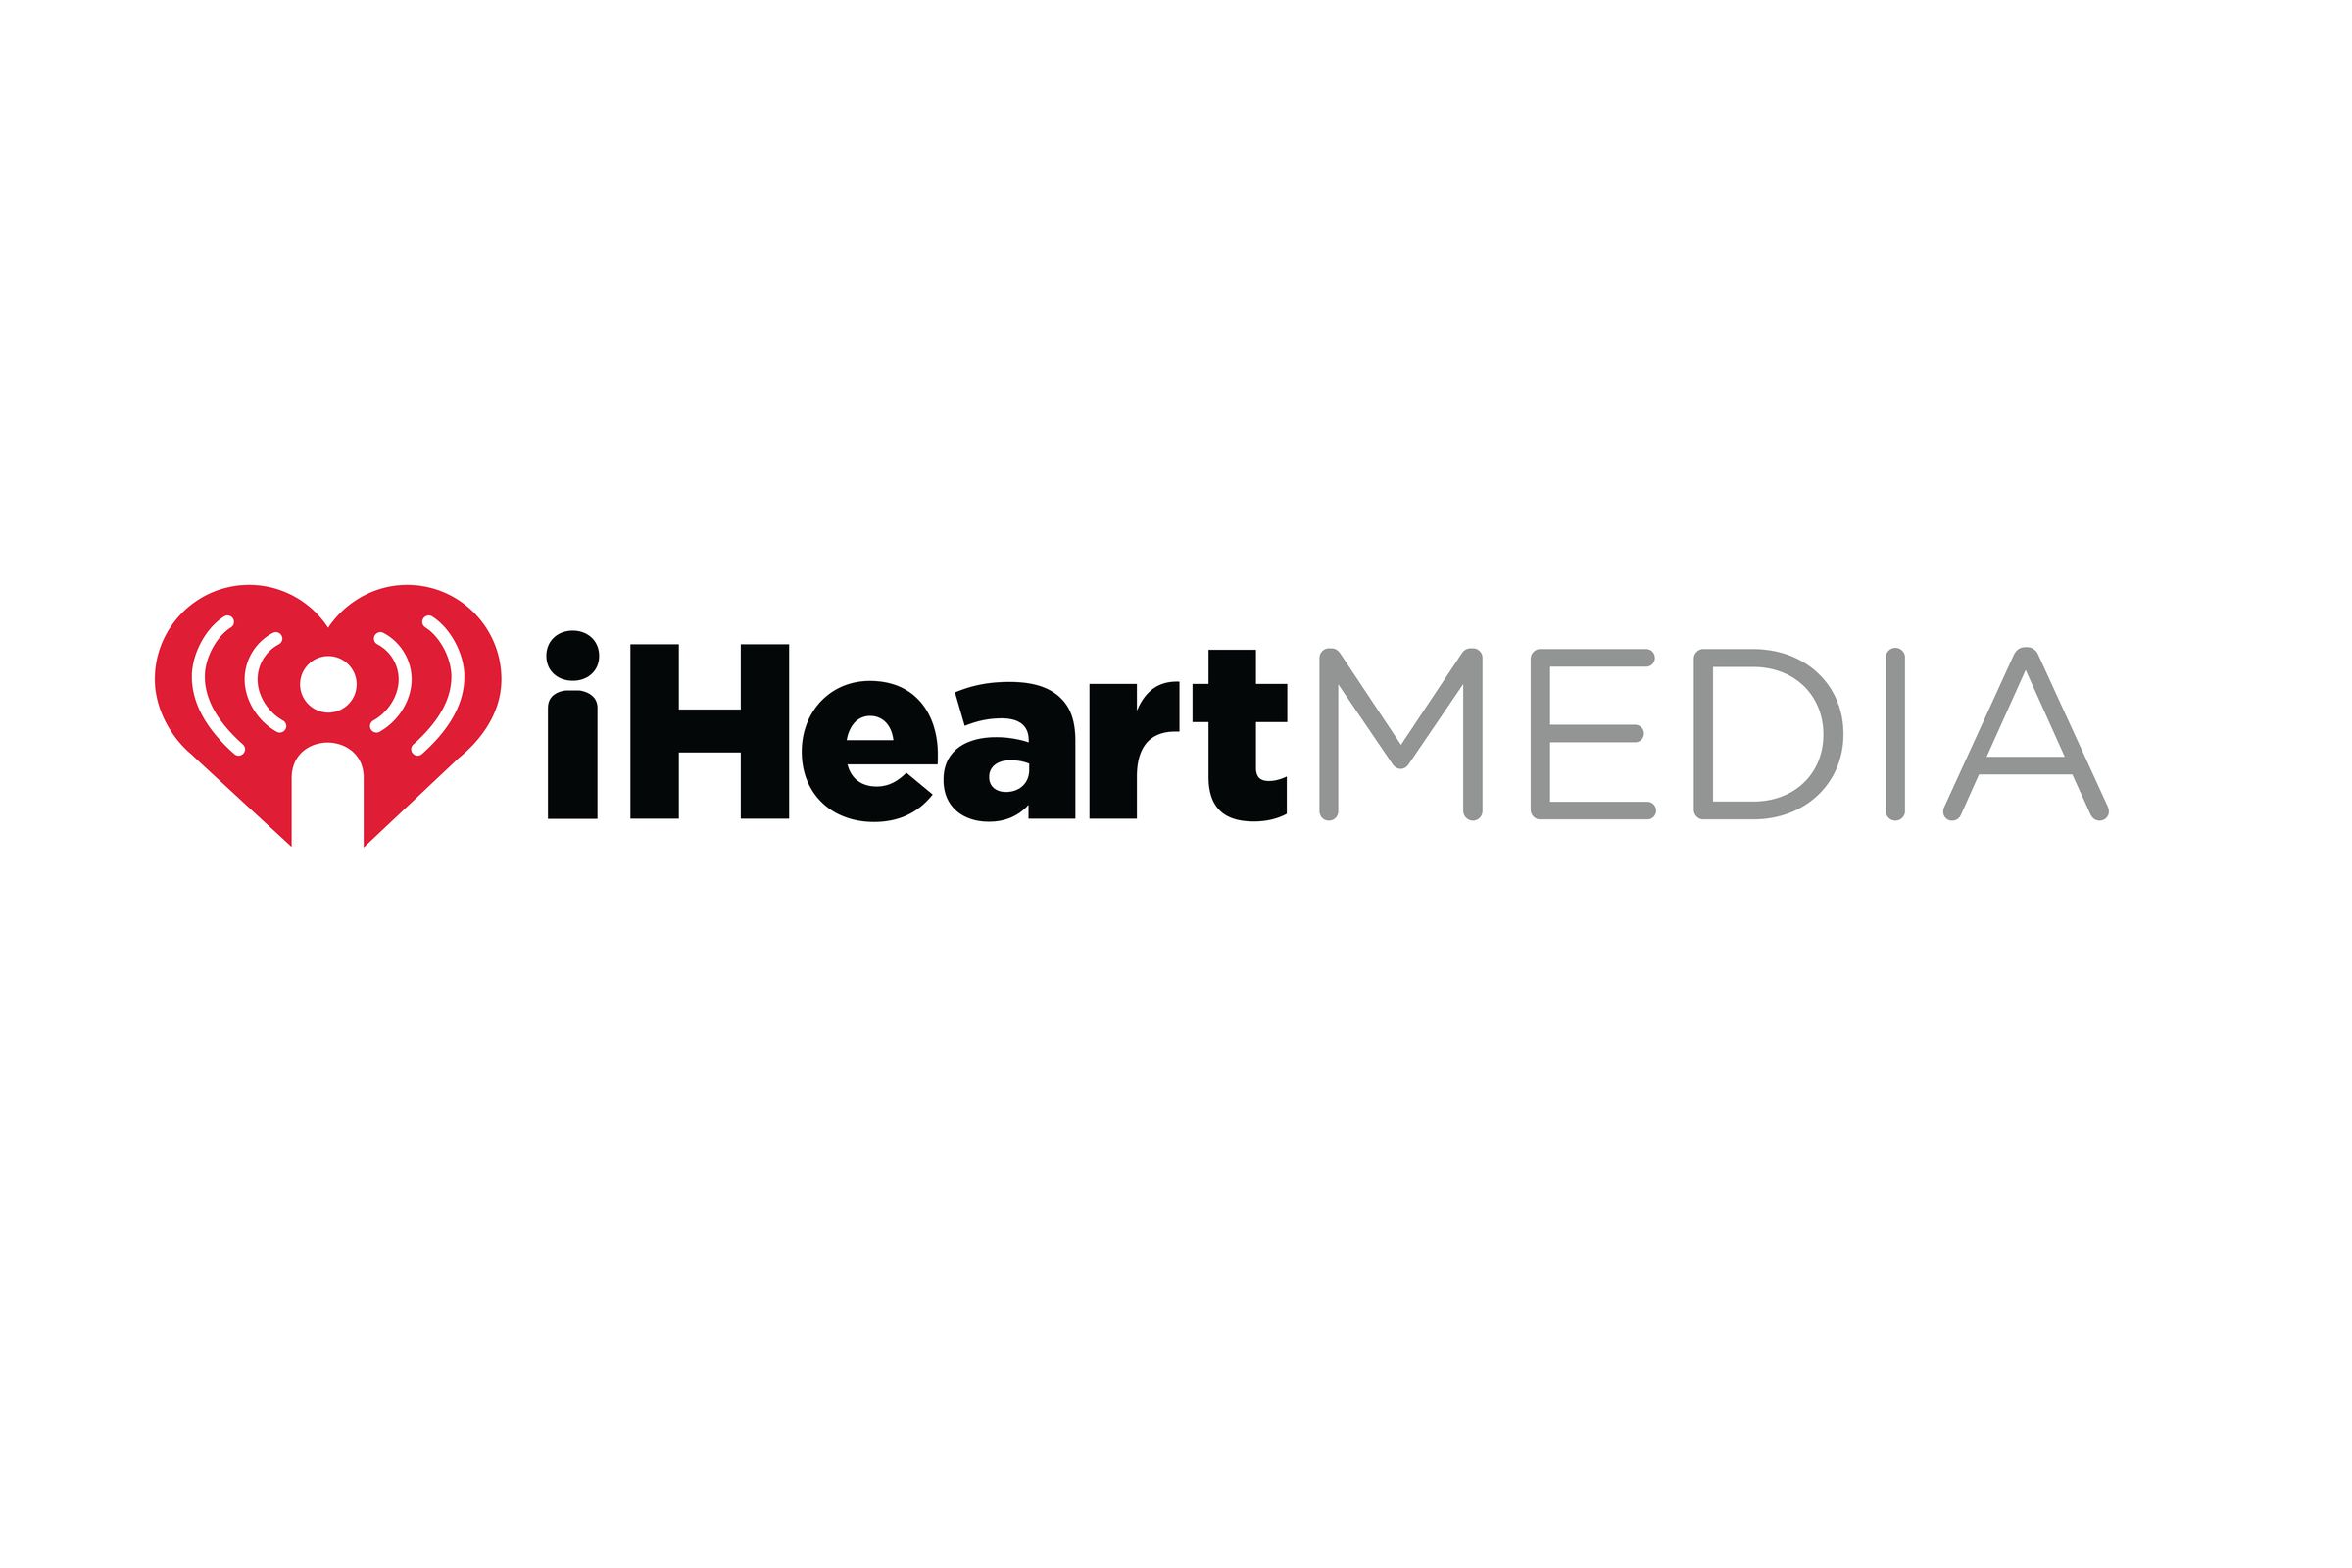 iHeartMedia horizontal logo (Credit: iHeartMedia)